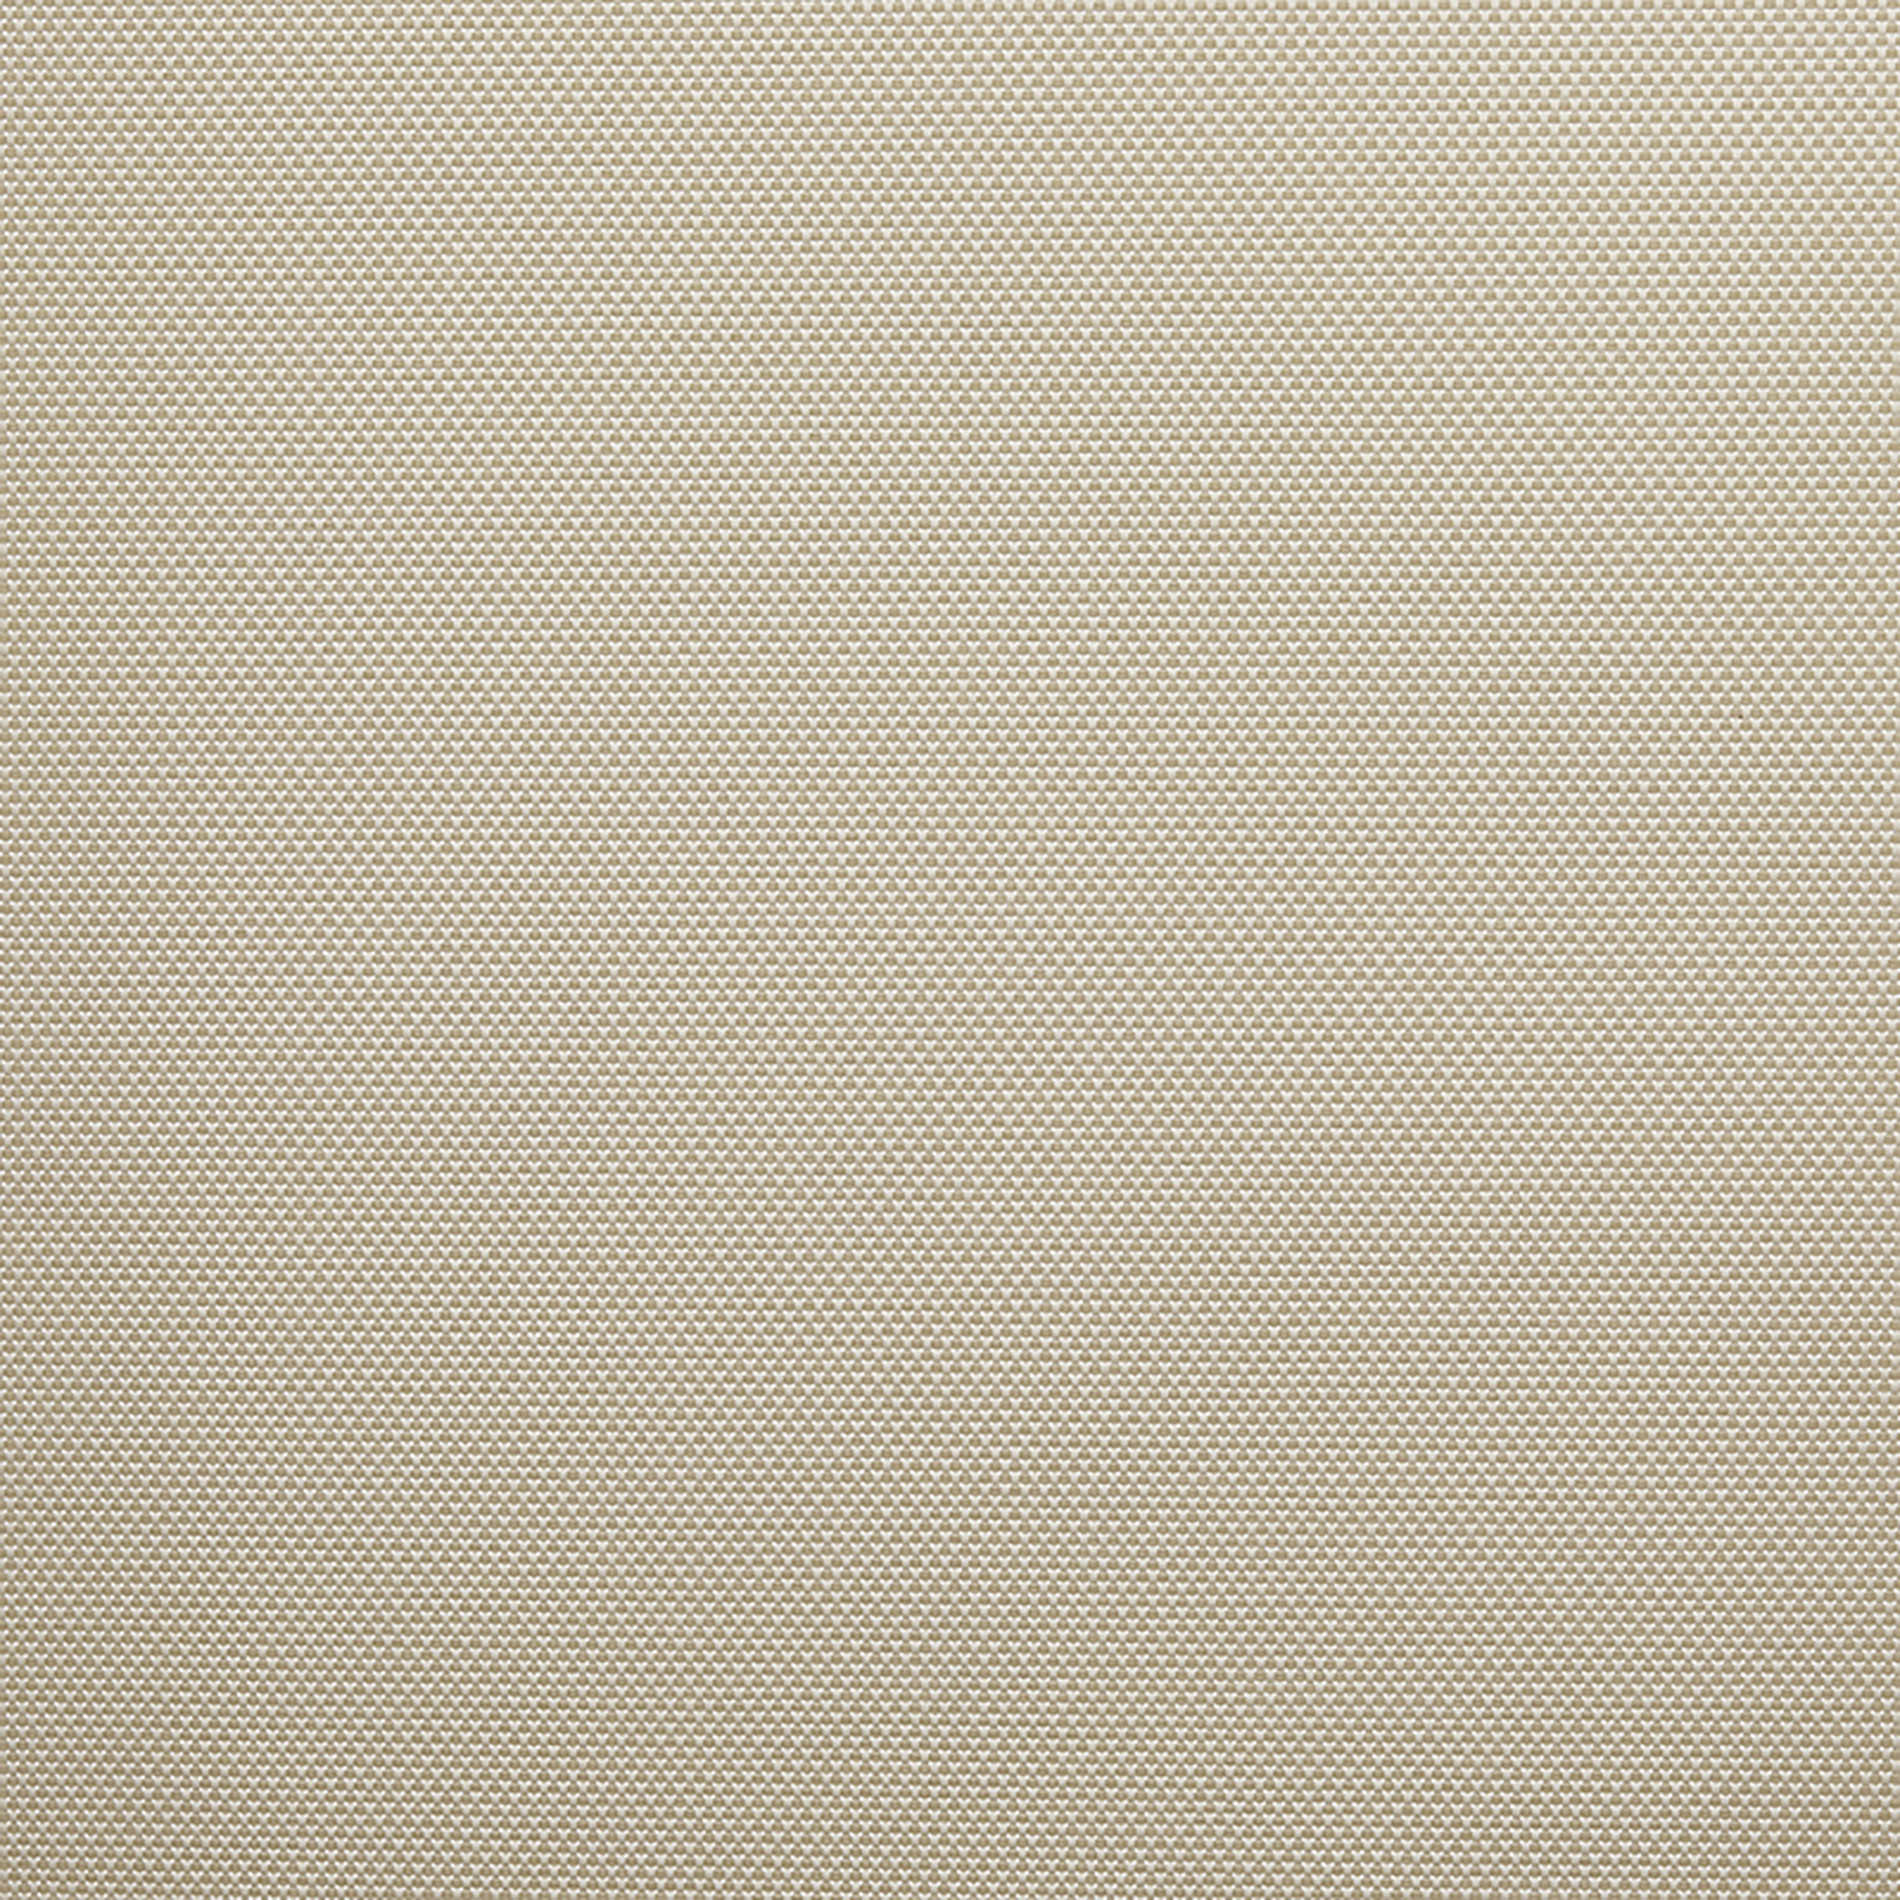 Altex - Fabric - ARGON_5 - White/Beige - ARGON_502